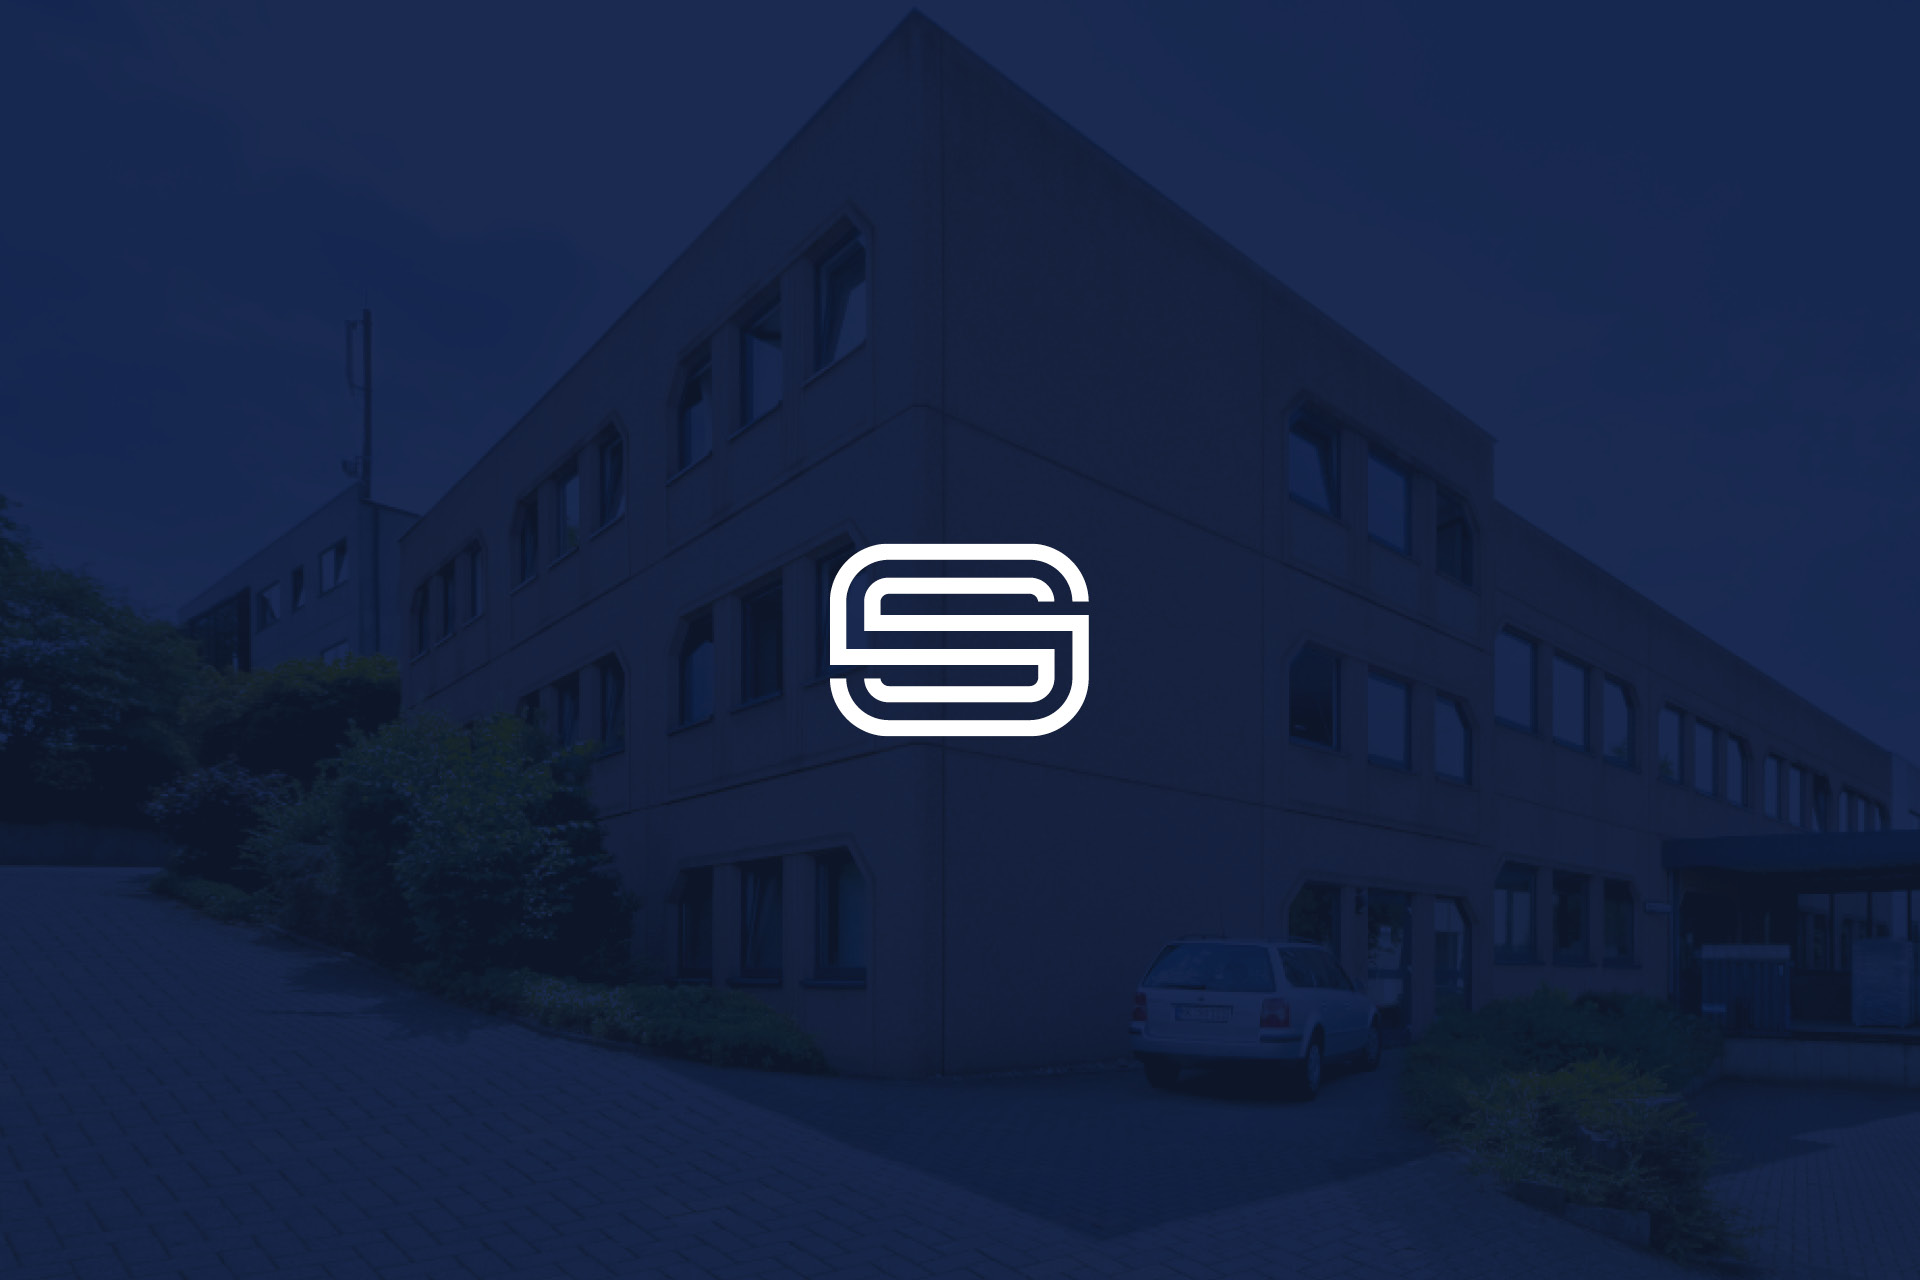 SOMA GmbH company website